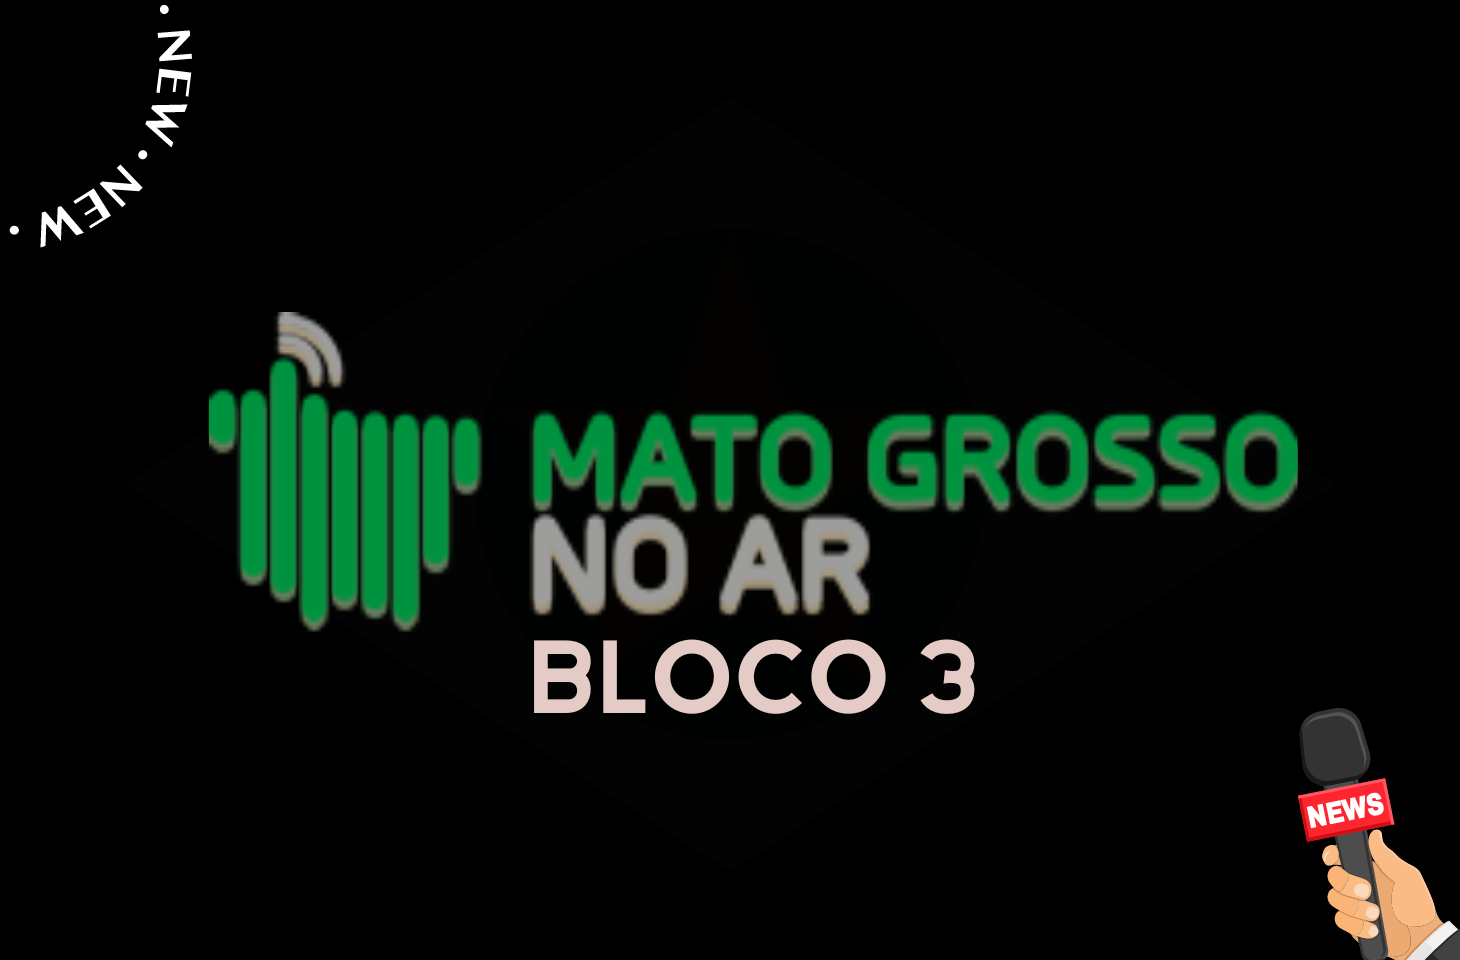 Jornal Mato Grosso No Ar - Bloco 3 - 09-02